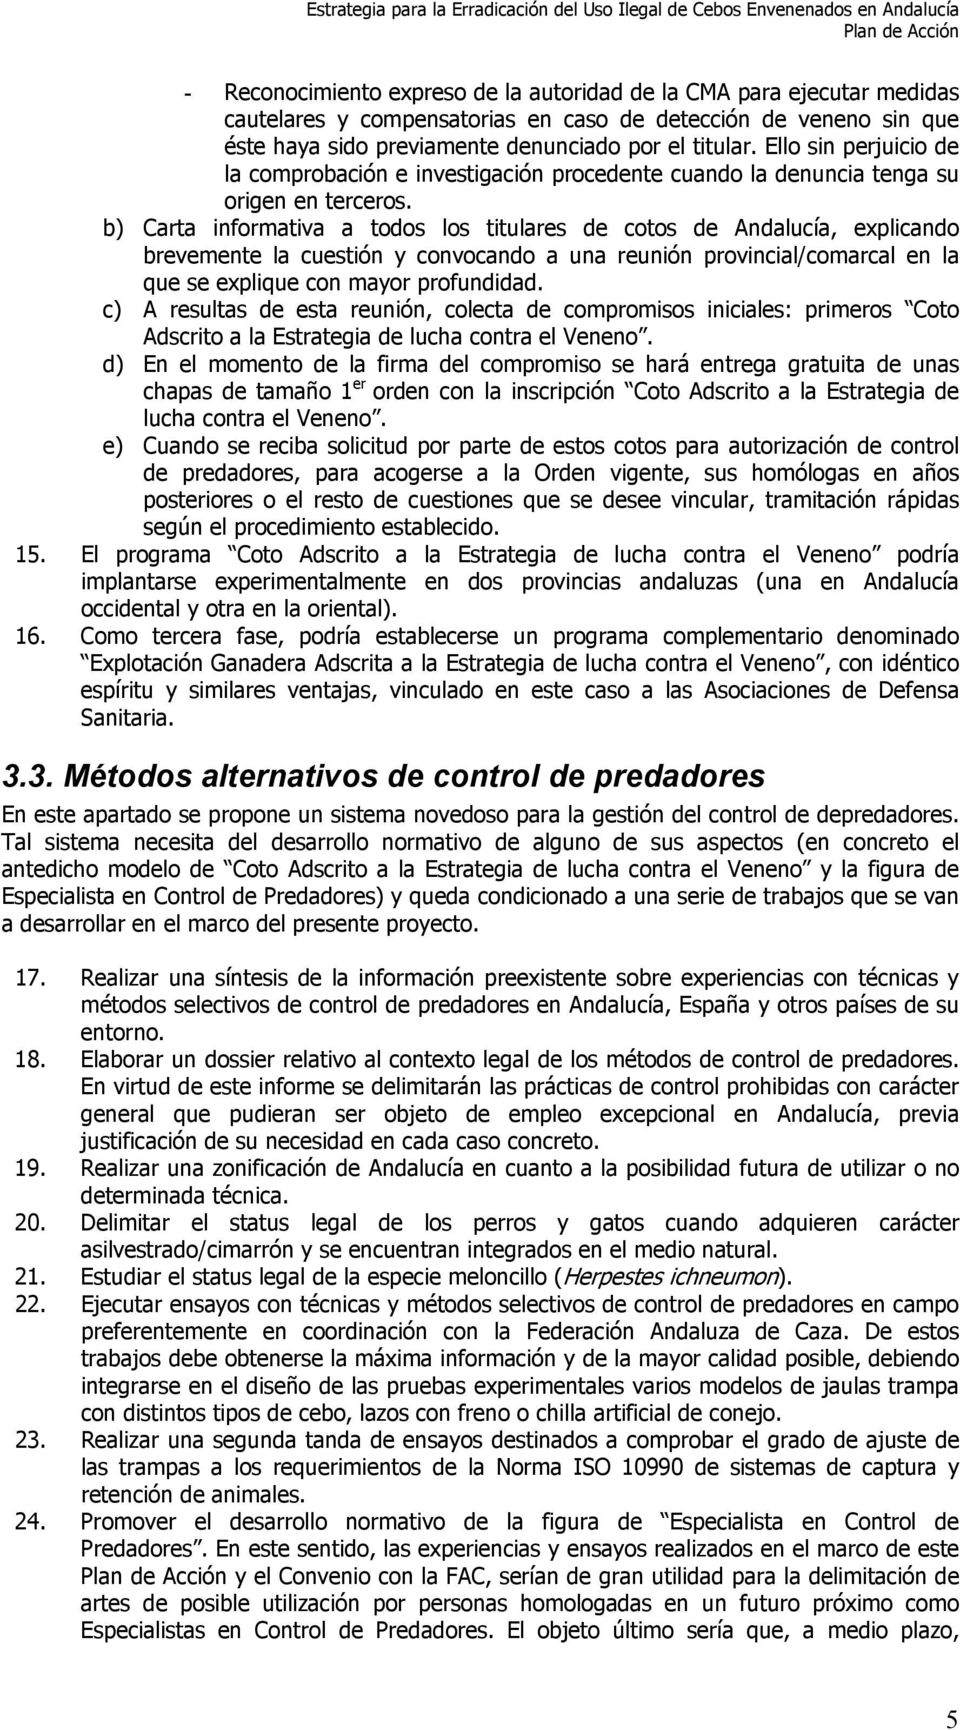 b) Carta informativa a todos los titulares de cotos de Andalucía, explicando brevemente la cuestión y convocando a una reunión provincial/comarcal en la que se explique con mayor profundidad.